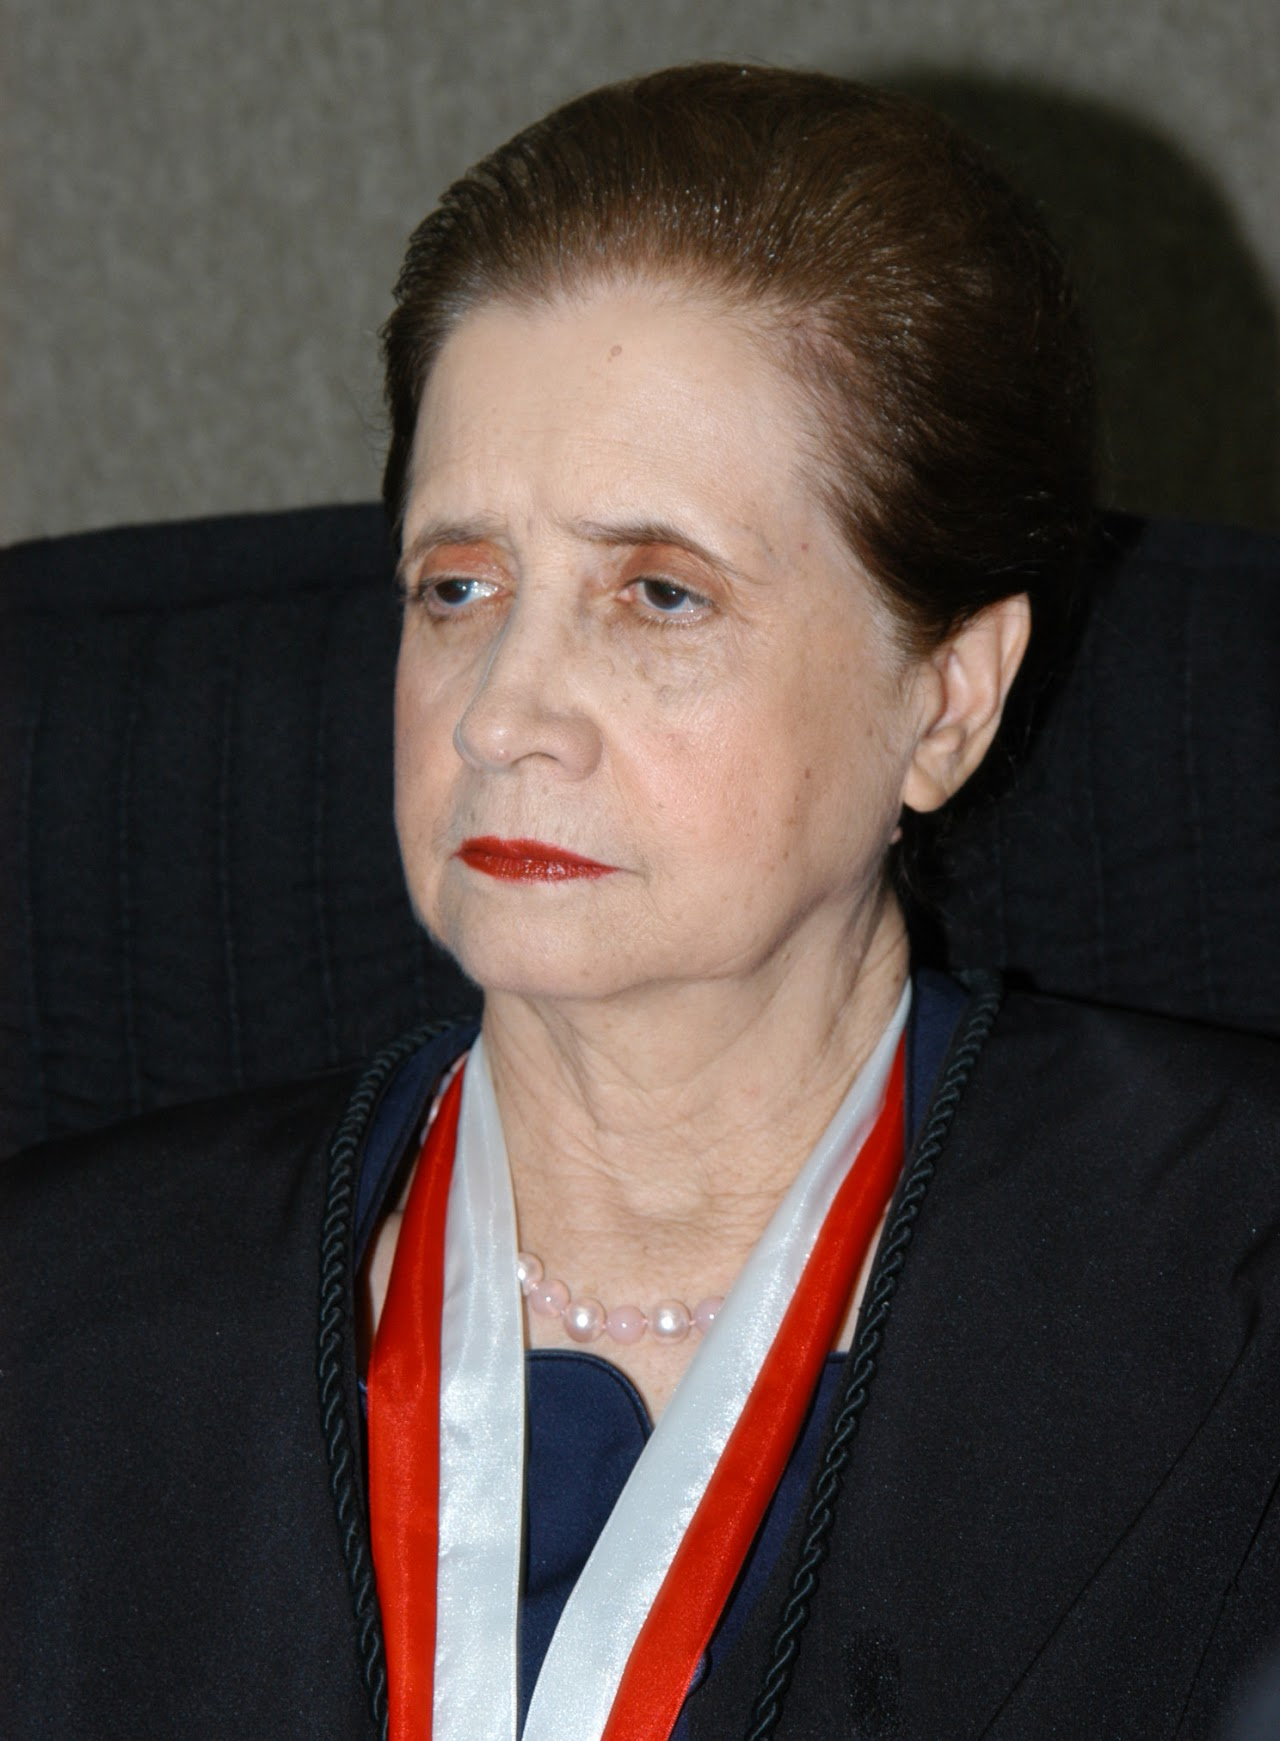 Dra. Marília Jugmann Santana